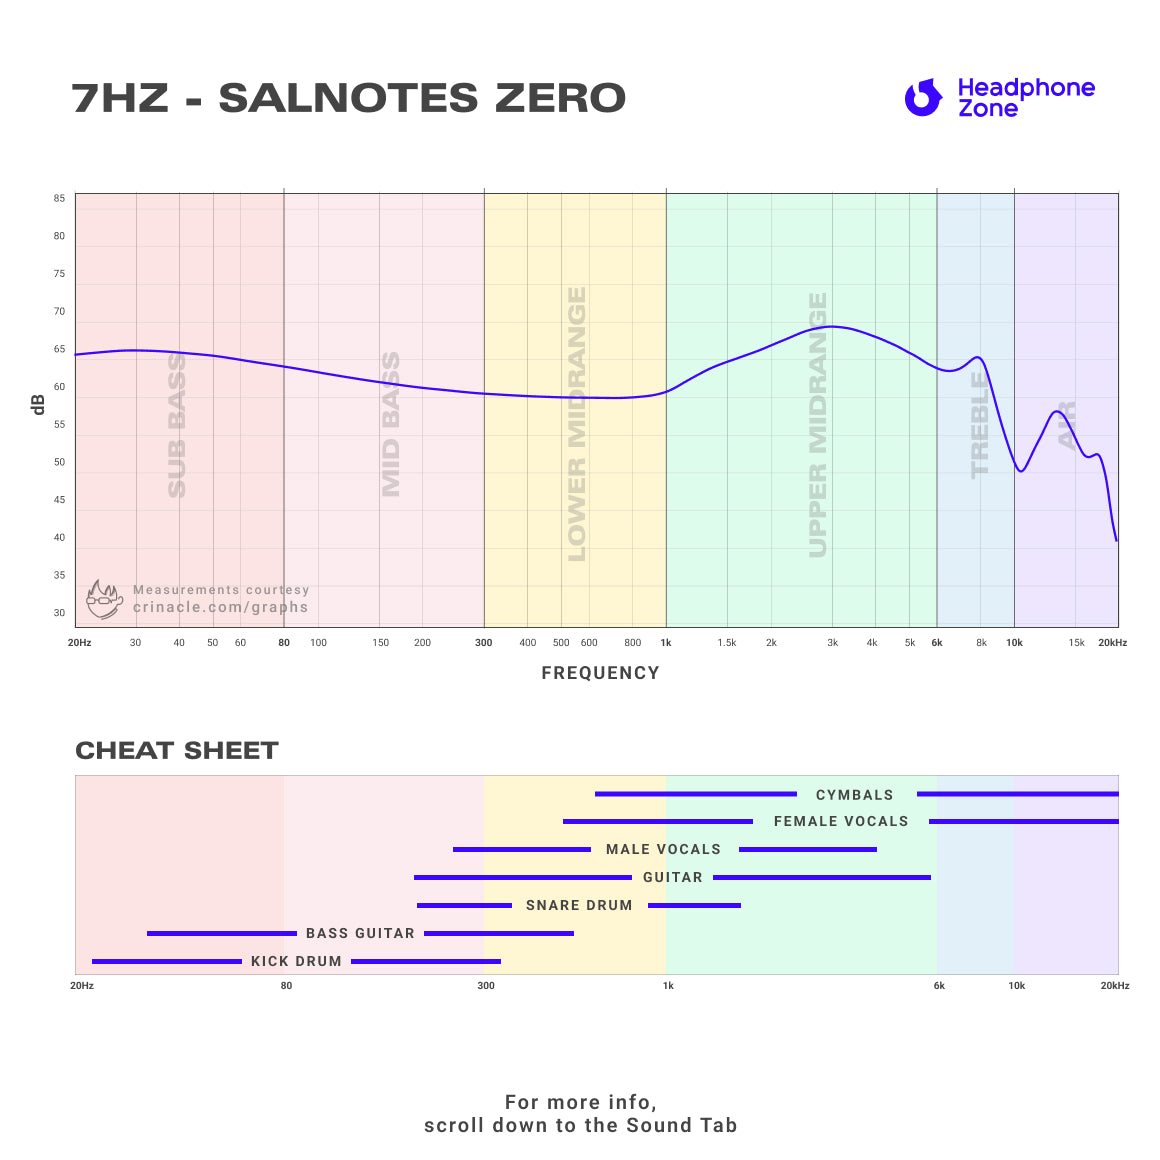 7HZ - Salnotes Zero (Unboxed)